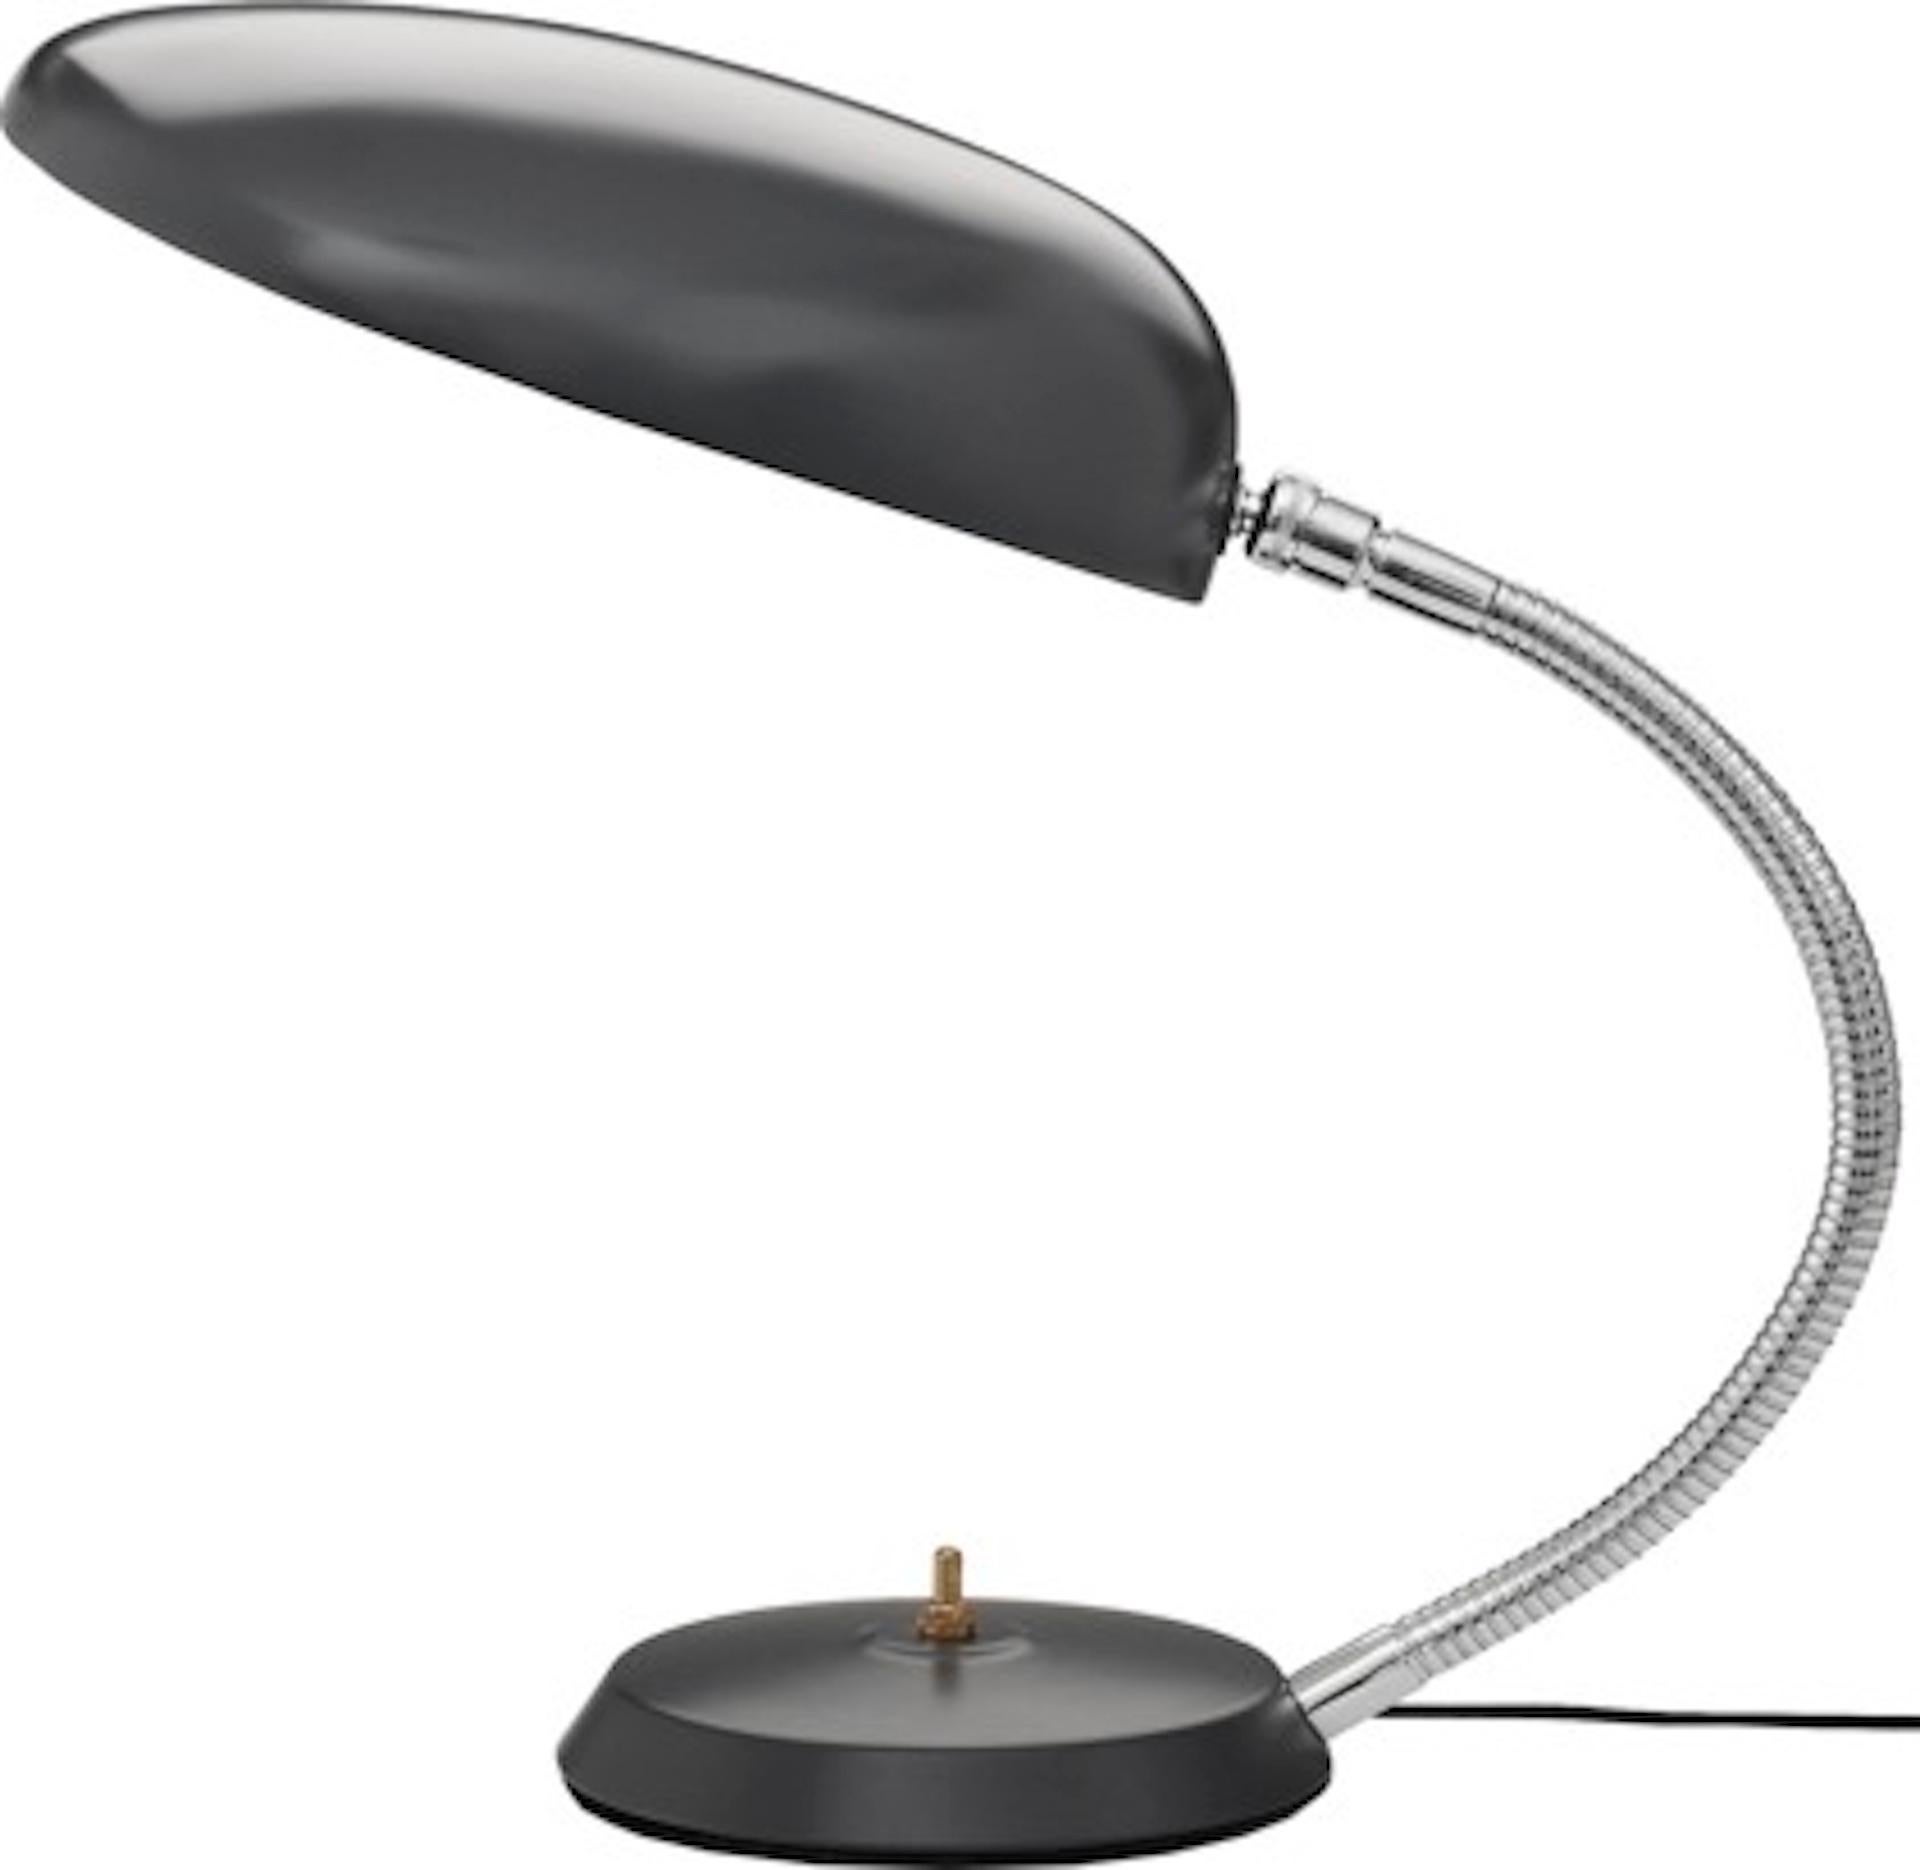 L'authentique lampe de table Cobra est l'une des créations les plus emblématiques de Greta M. Grossman. Cette lampe de table a été conçue dans les années 1950 et tire son nom de la forme de son abat-jour ovale, qui rappelle le cou d'un cobra. En